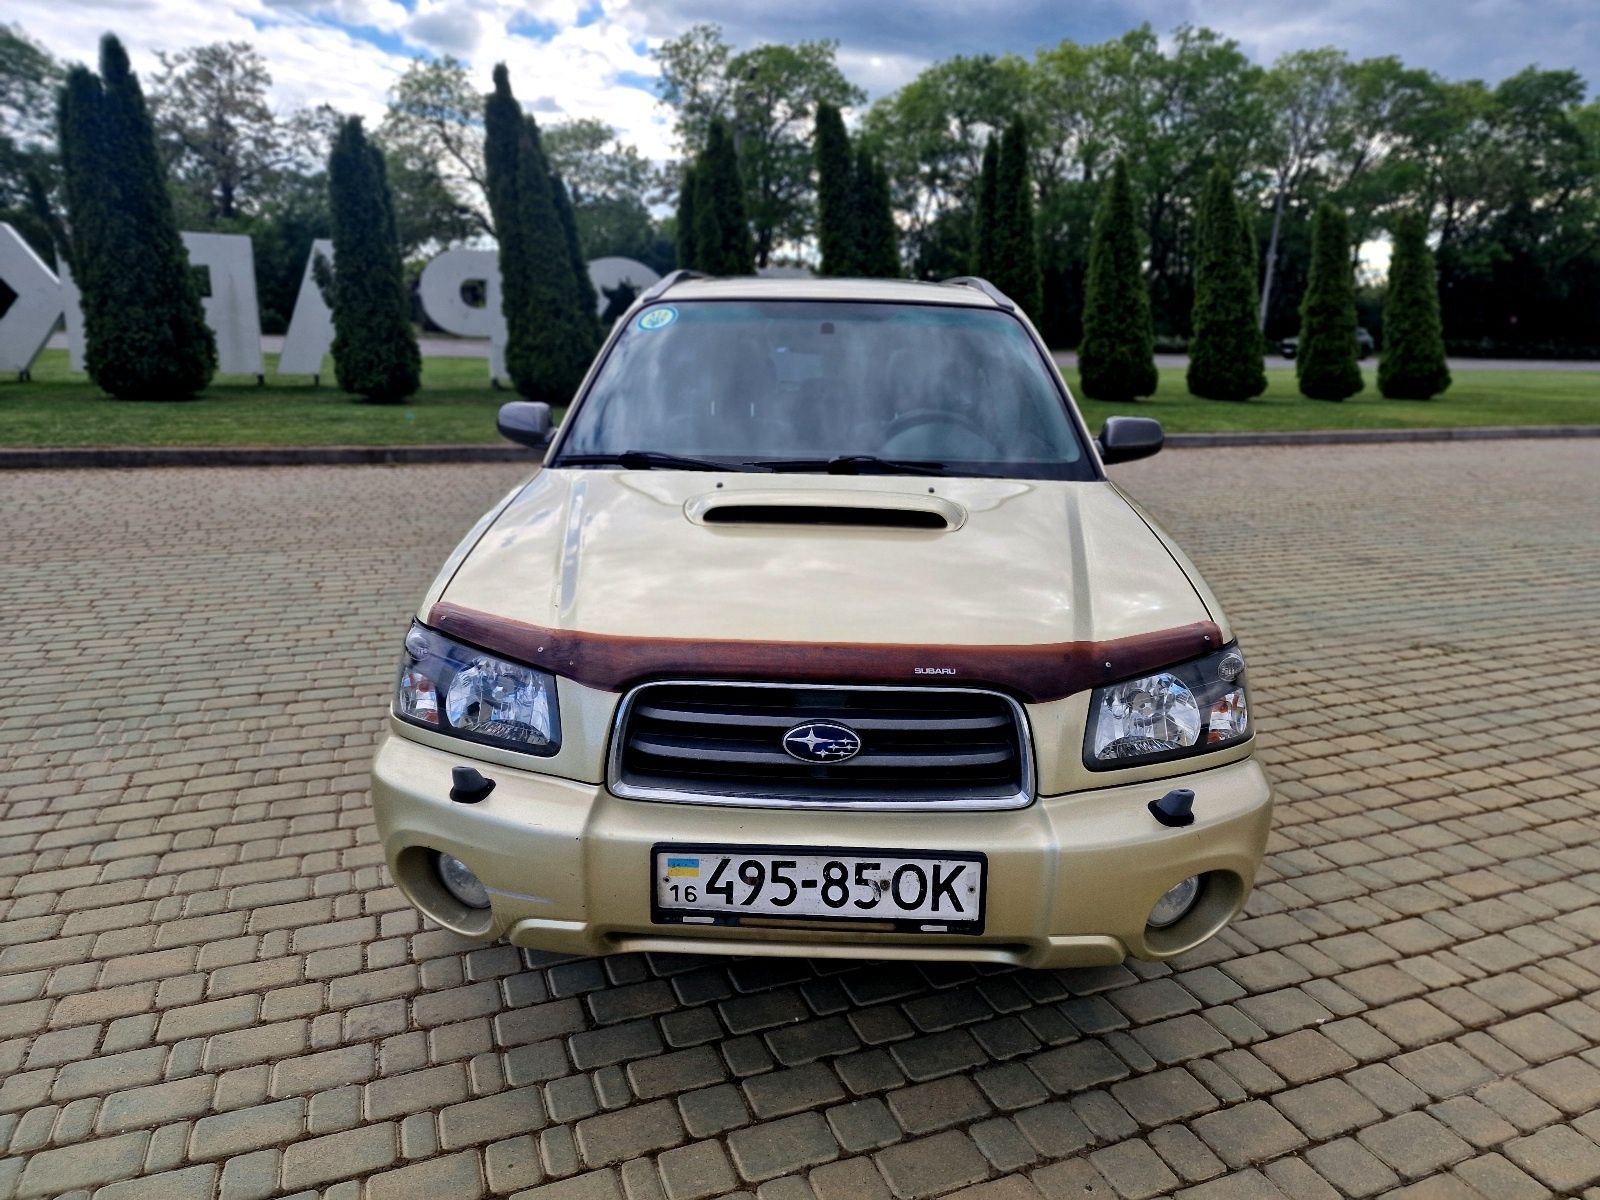 Продам Subaru Forester, Субару Форестер 2002г.в. 2.0бенз